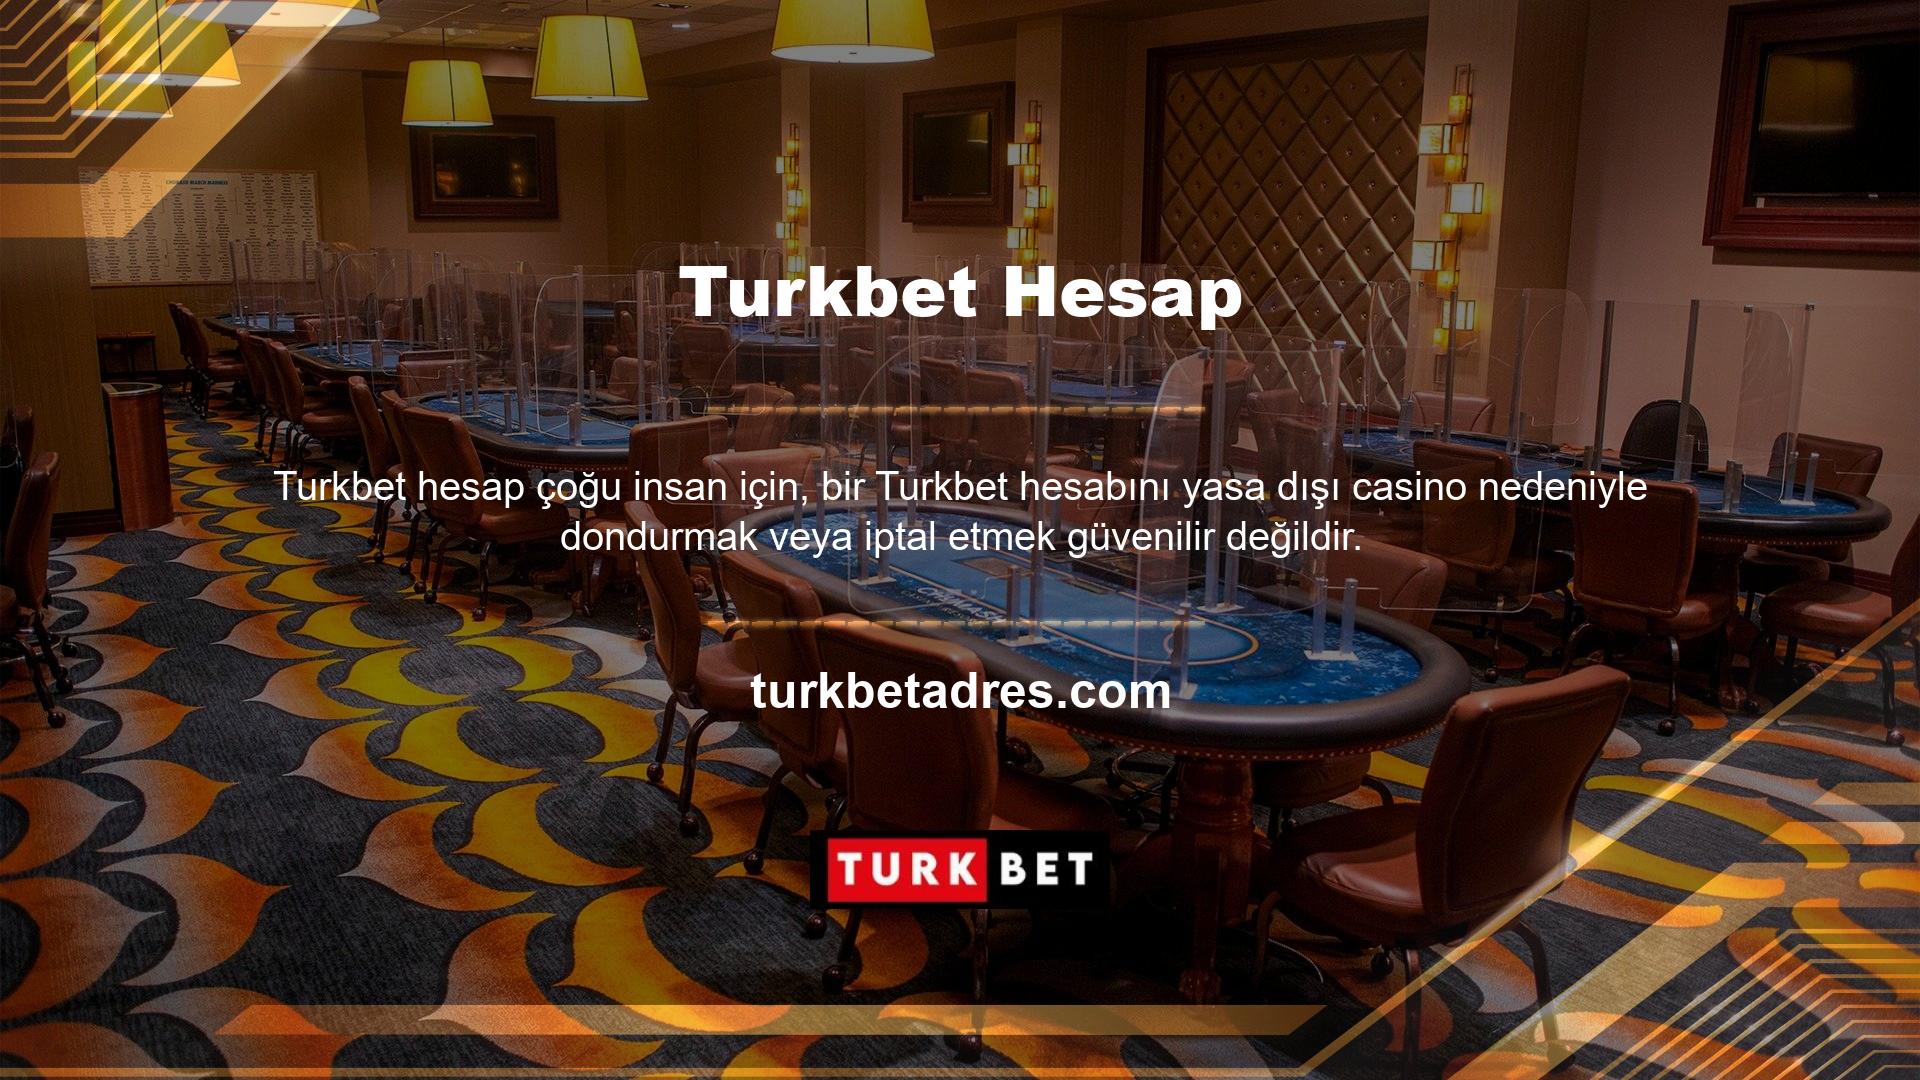 Yasadışı casino siteleri Türkiye'de yasa dışı olarak faaliyet göstermektedir, ancak dünyanın herhangi bir yerinde yasal olarak casino oynamak için gerekli lisanslara sahiptirler